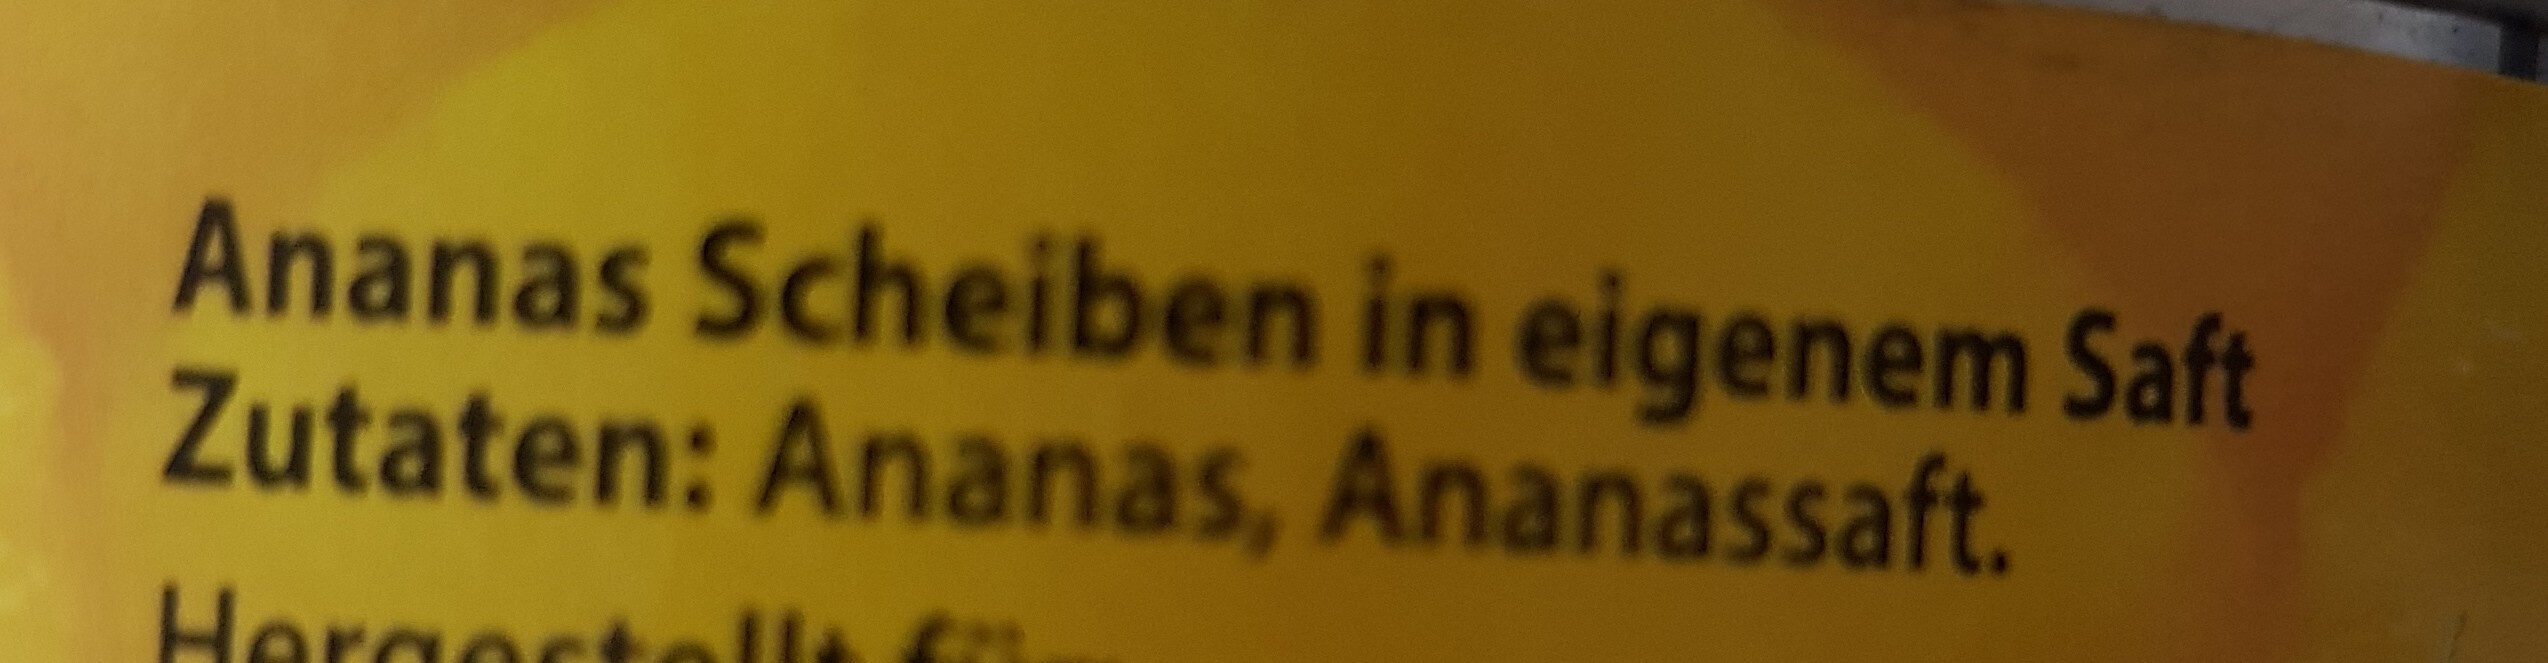 Ananas Scheiben - Zutaten